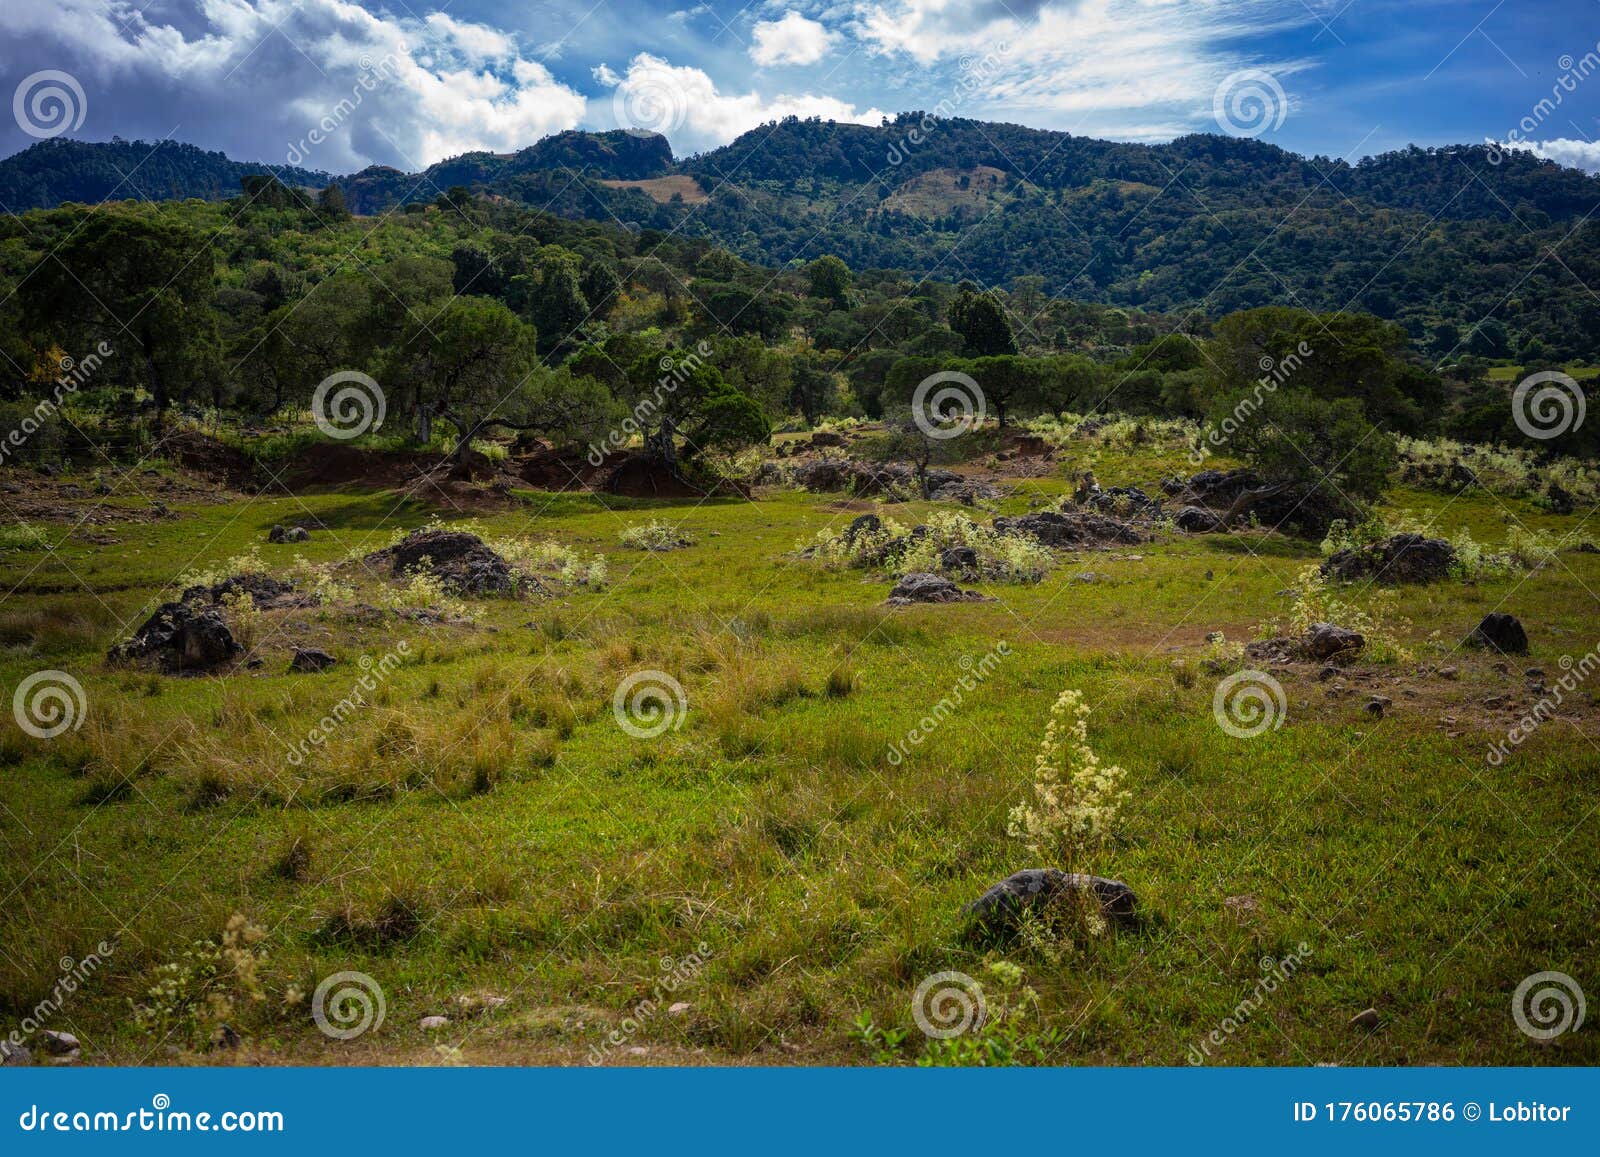 beautiful mountainous landscape in estado de mexico mexico